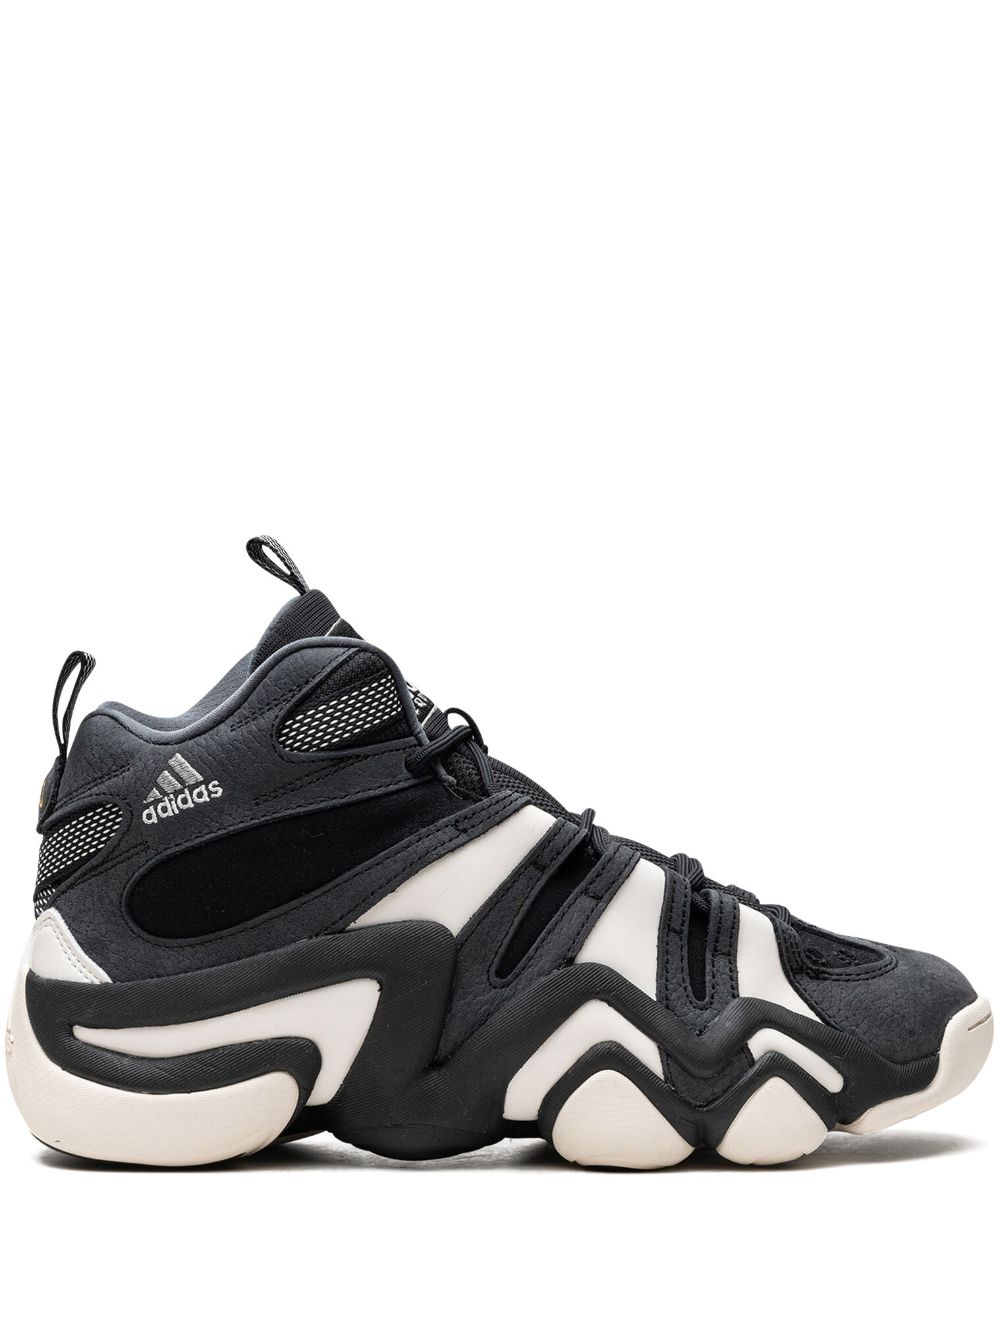 Shop Adidas Originals Crazy 8 "black/white" Sneakers